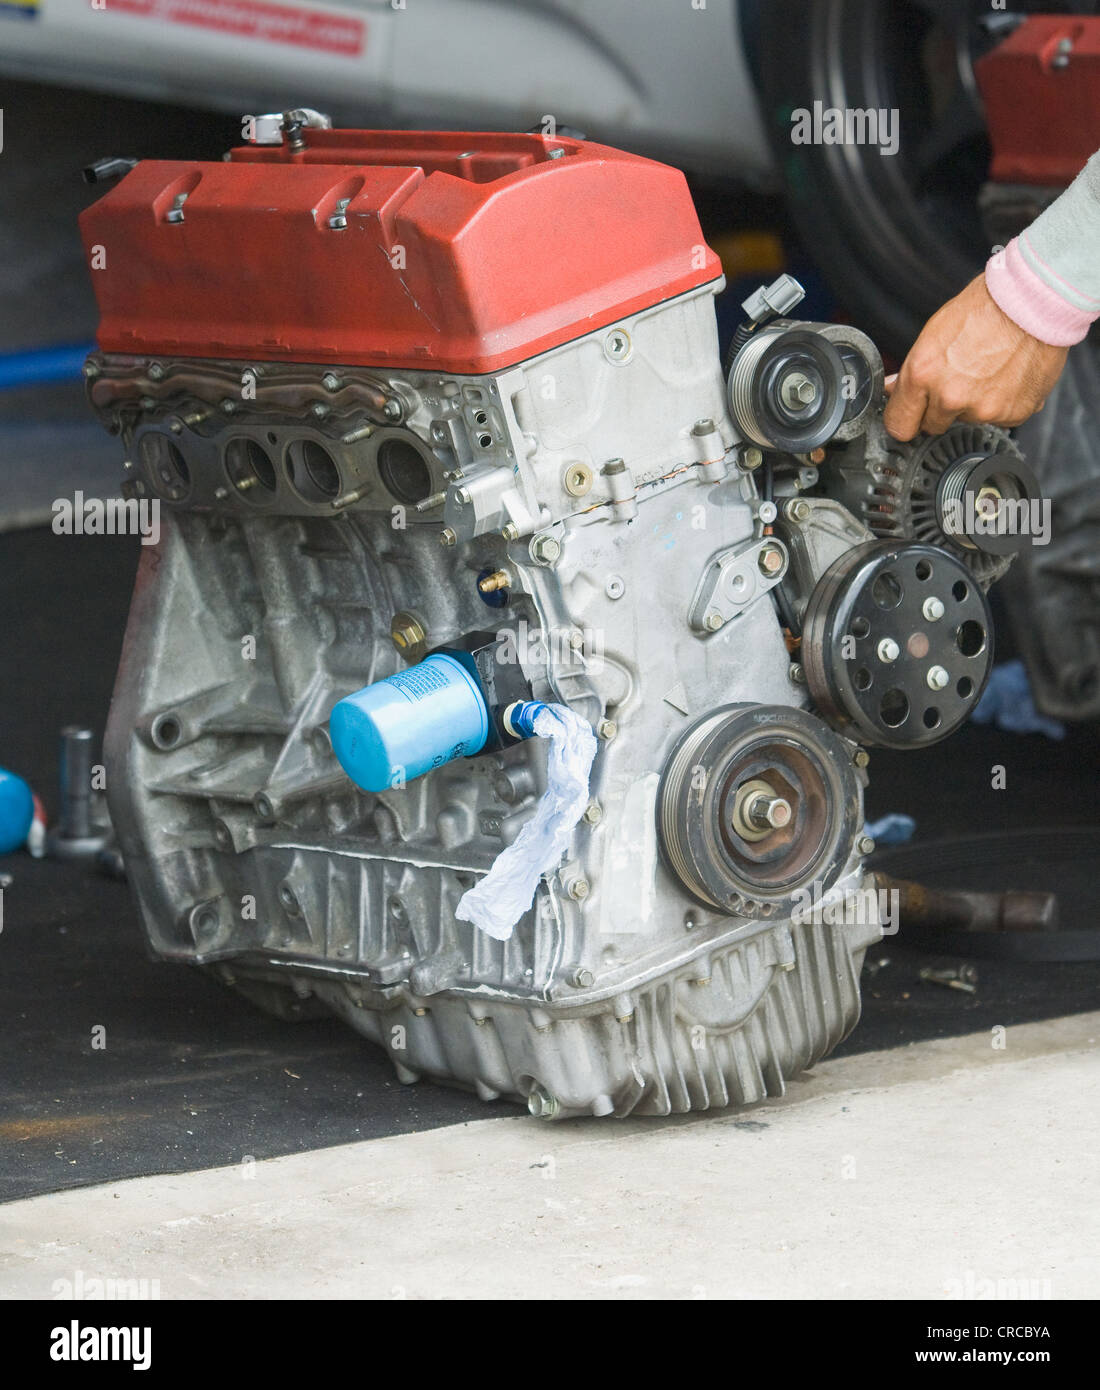 Vierzylinder-Automotor auf dem Boden. Hand des Mechanikers sichtbar. Stockfoto